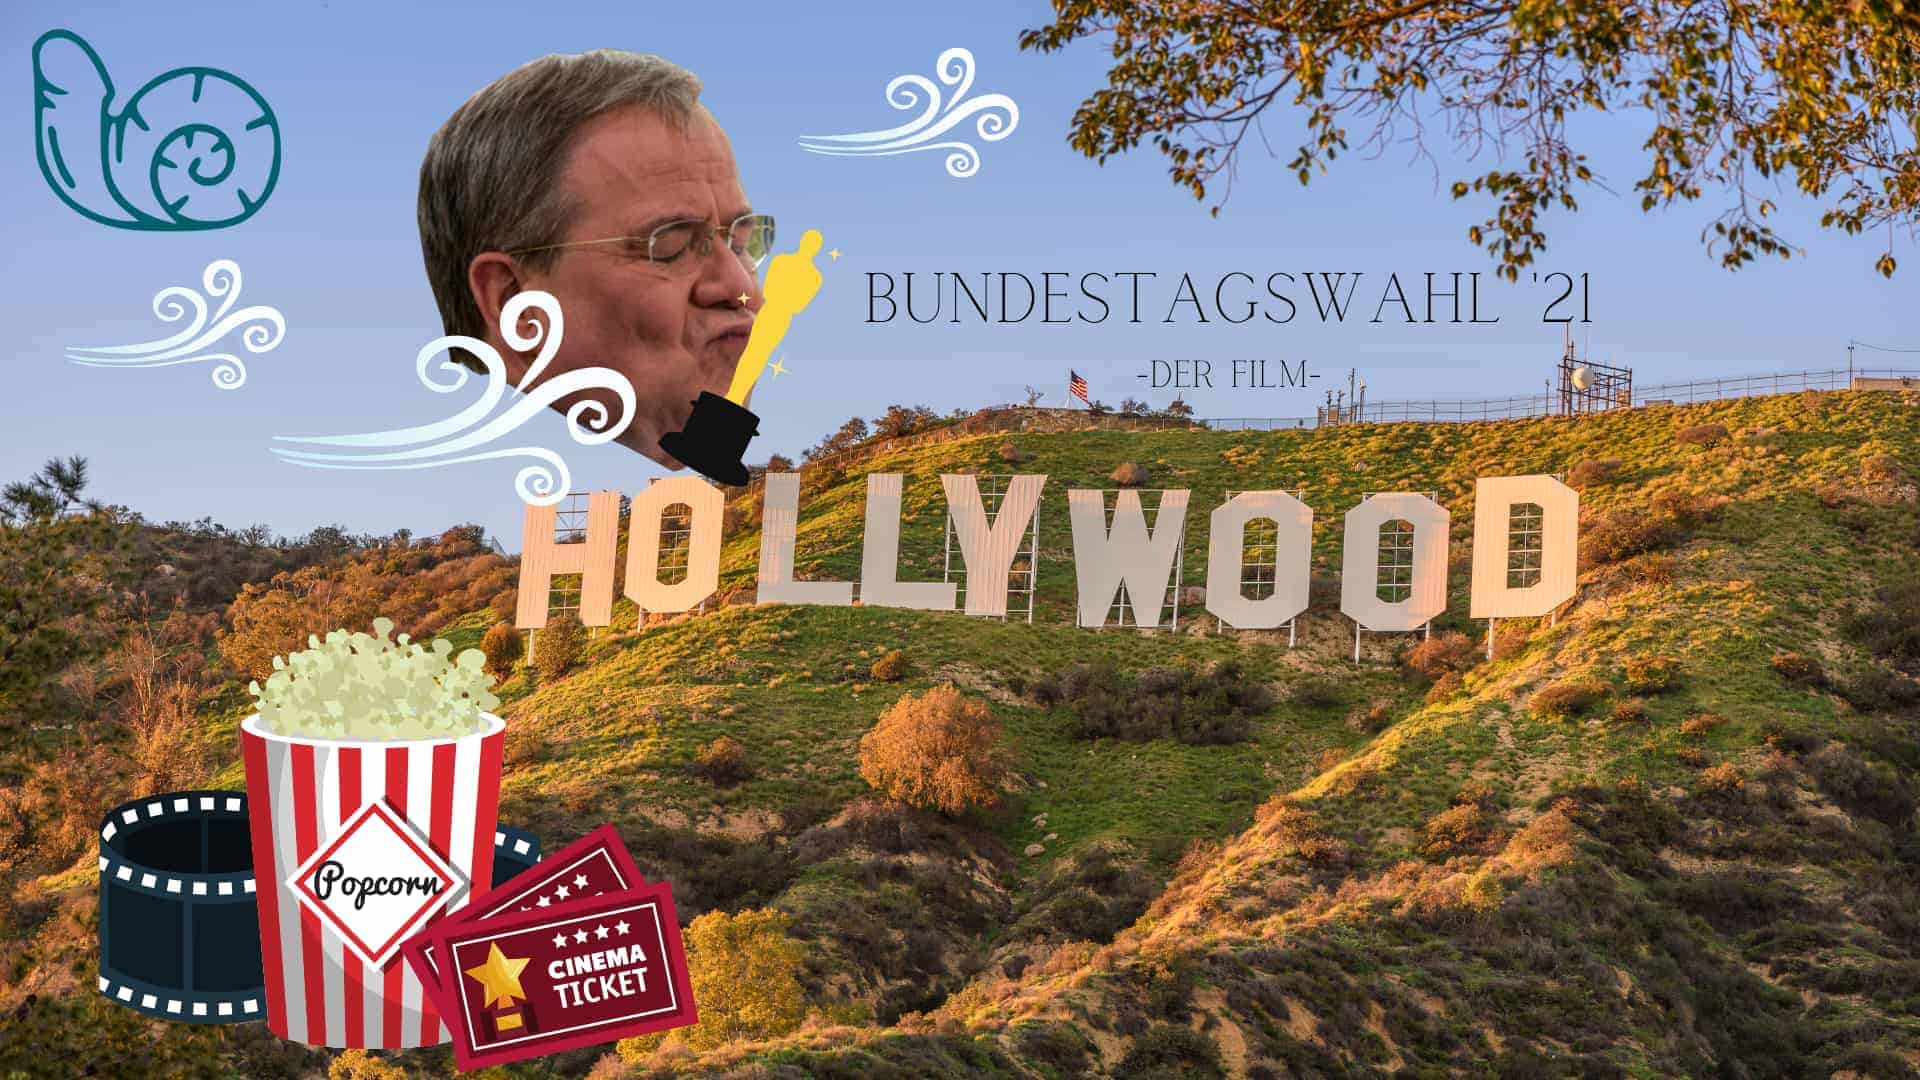 Bild für den Beitrag: Hollywood plant Filmadaption zu Bundestagswahl 2021